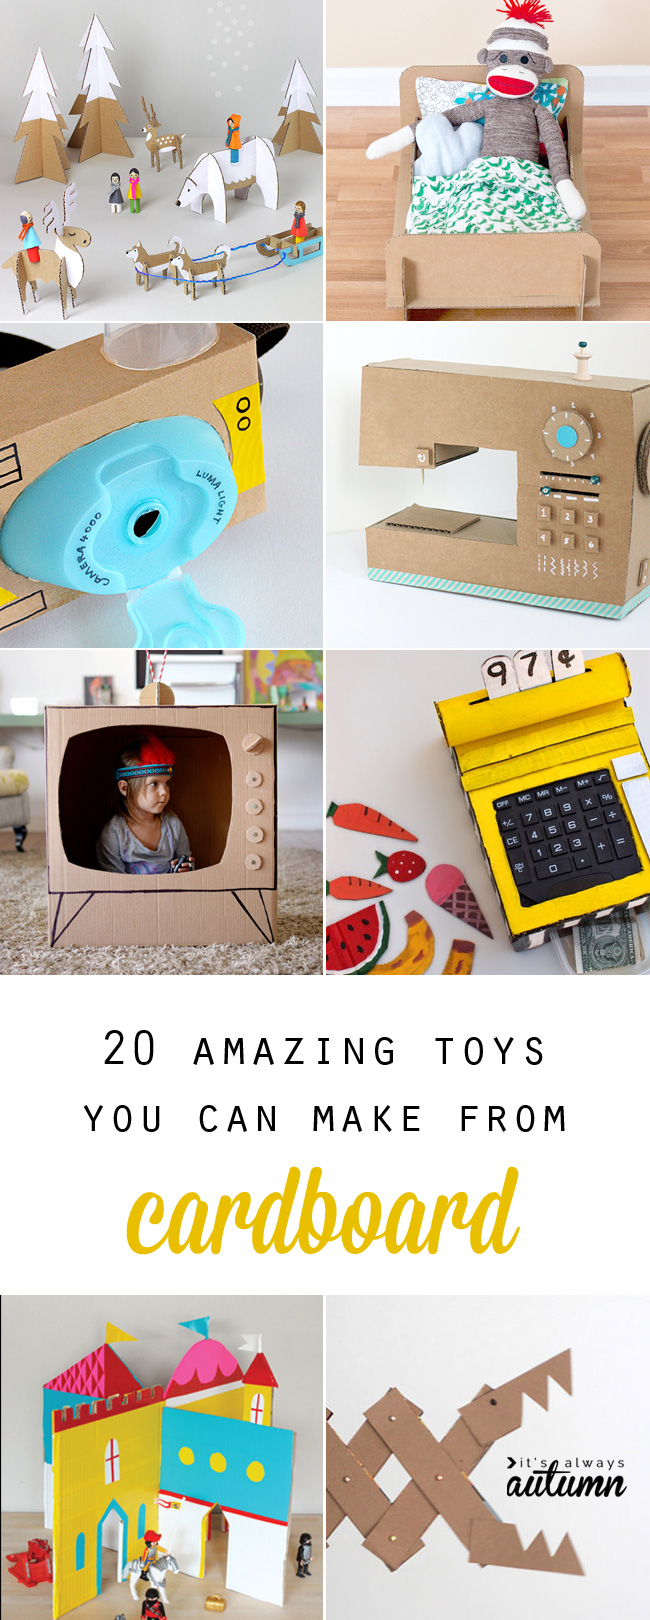 Handmade Toys for Kids